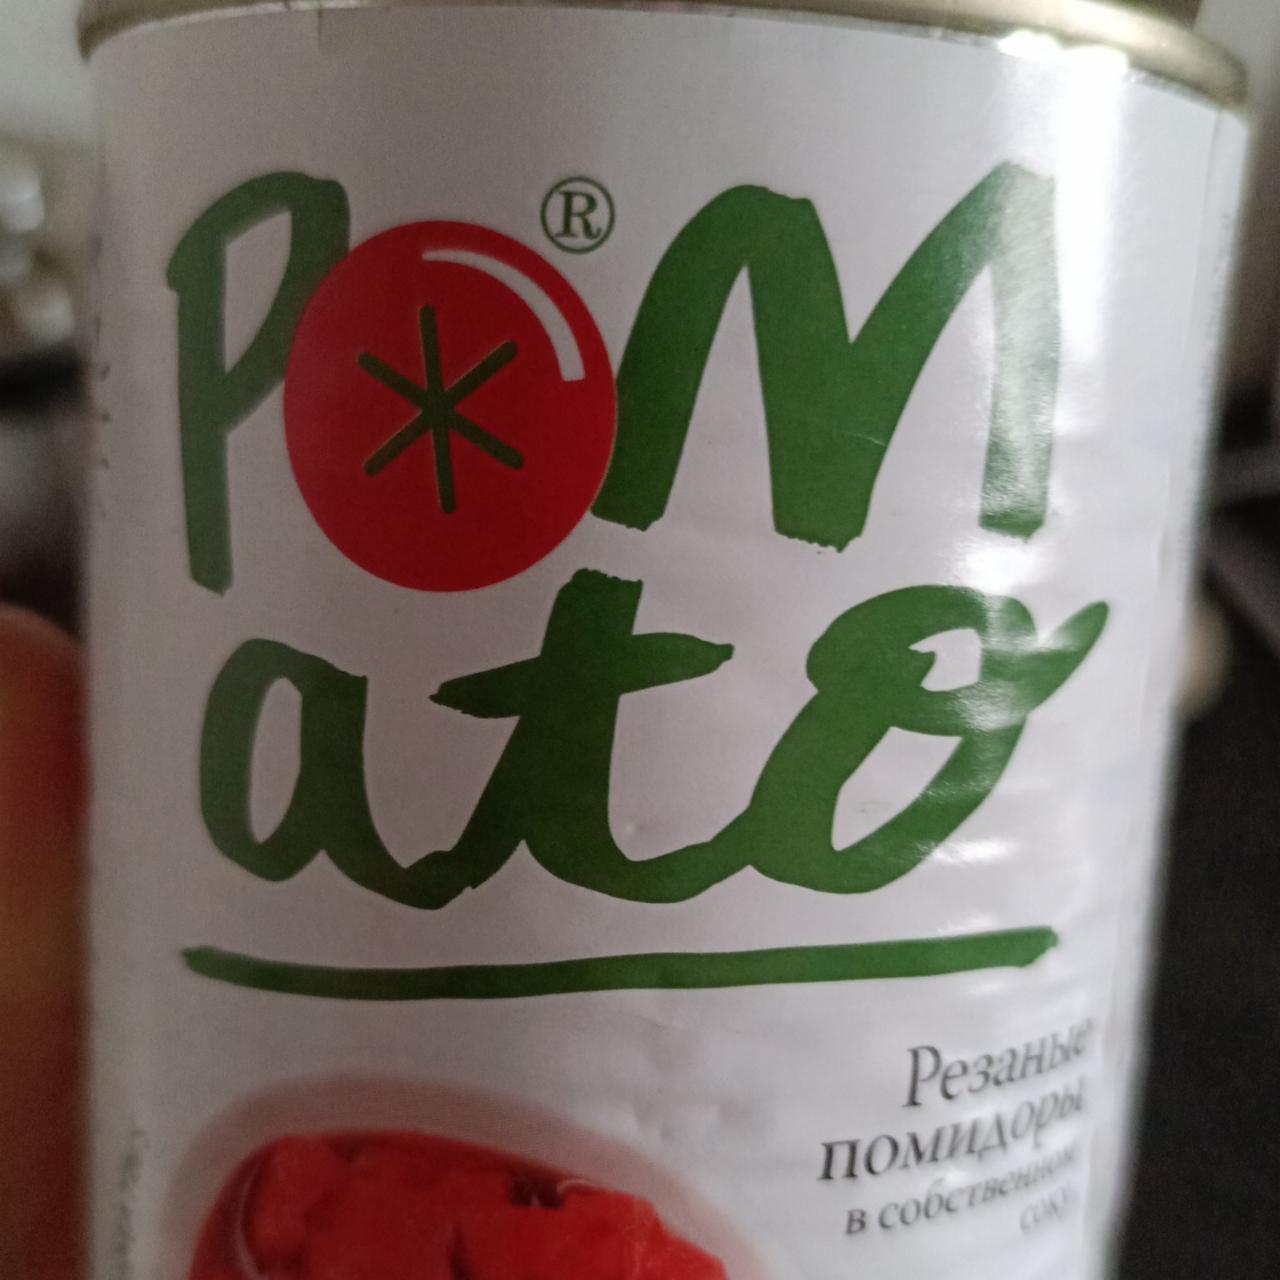 Фото - Резаные томаты в собственном соку Pomato